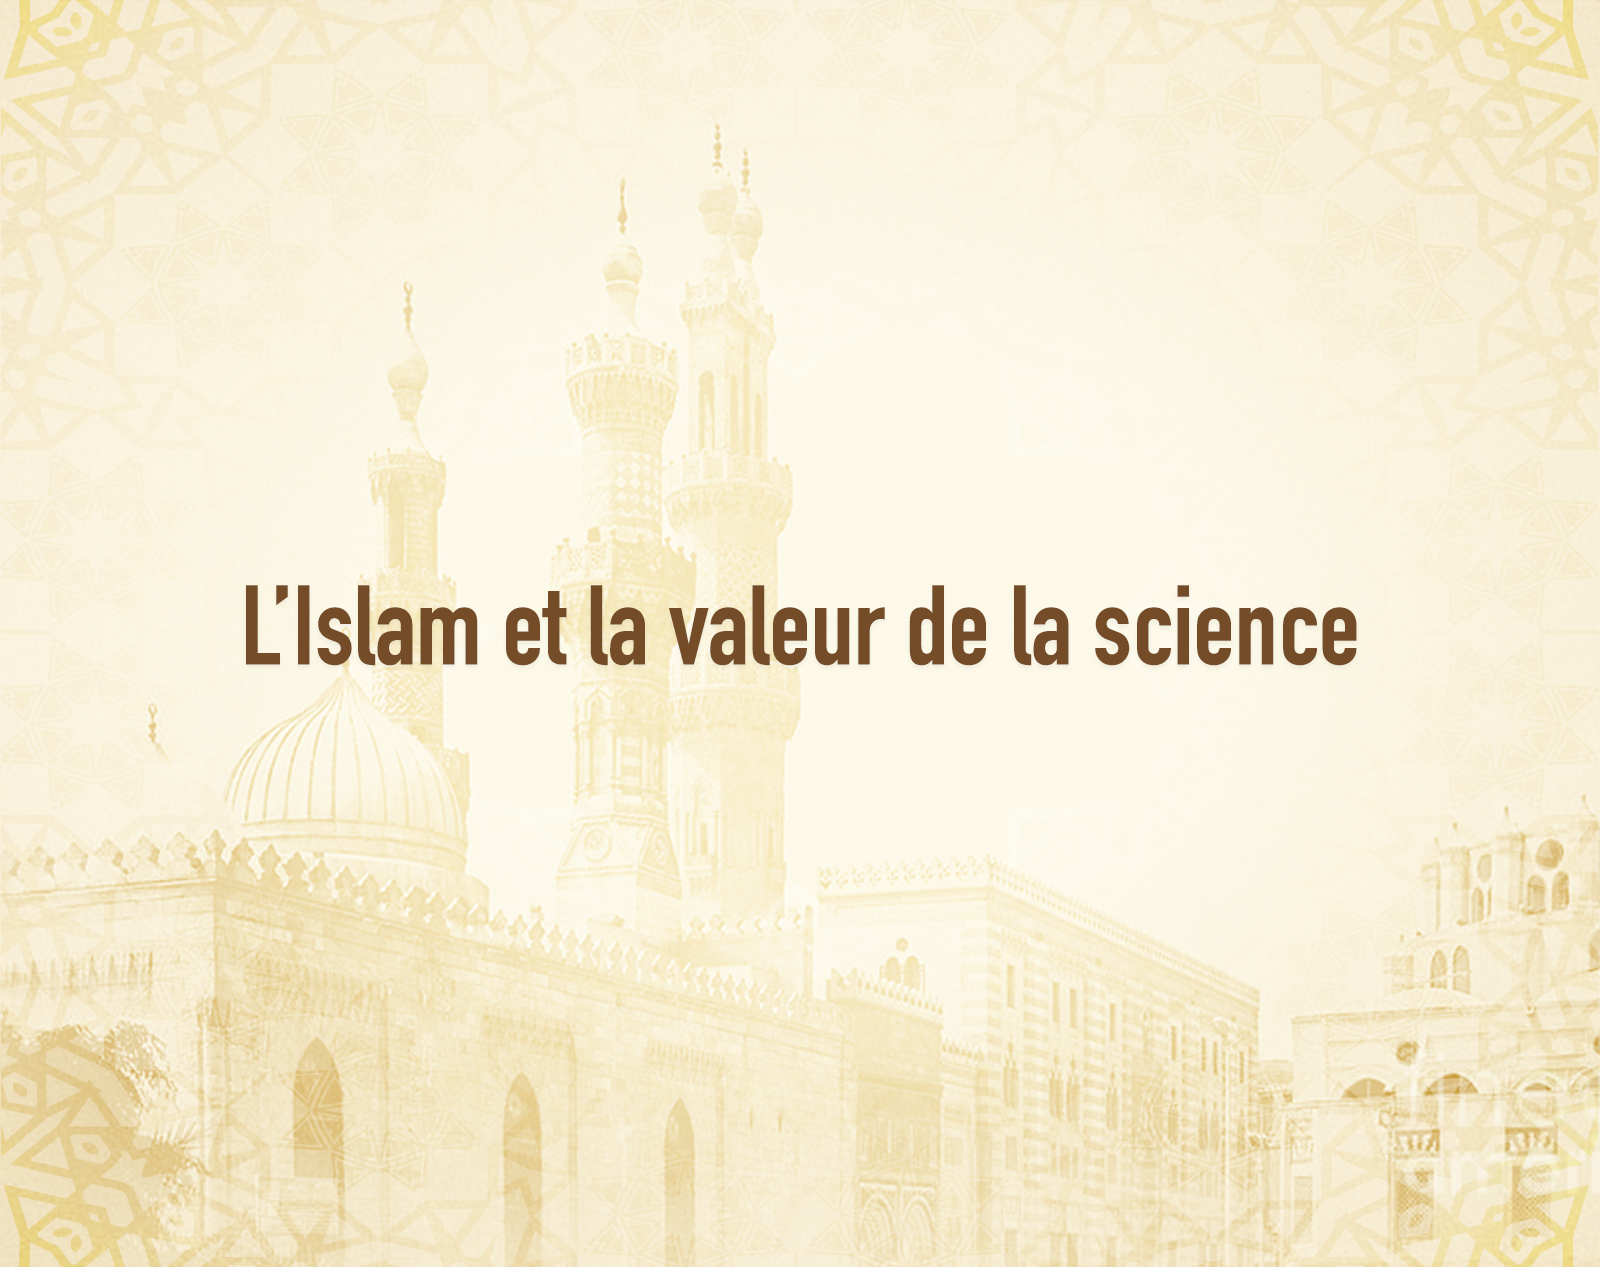 L’Islam et la valeur de la science.png